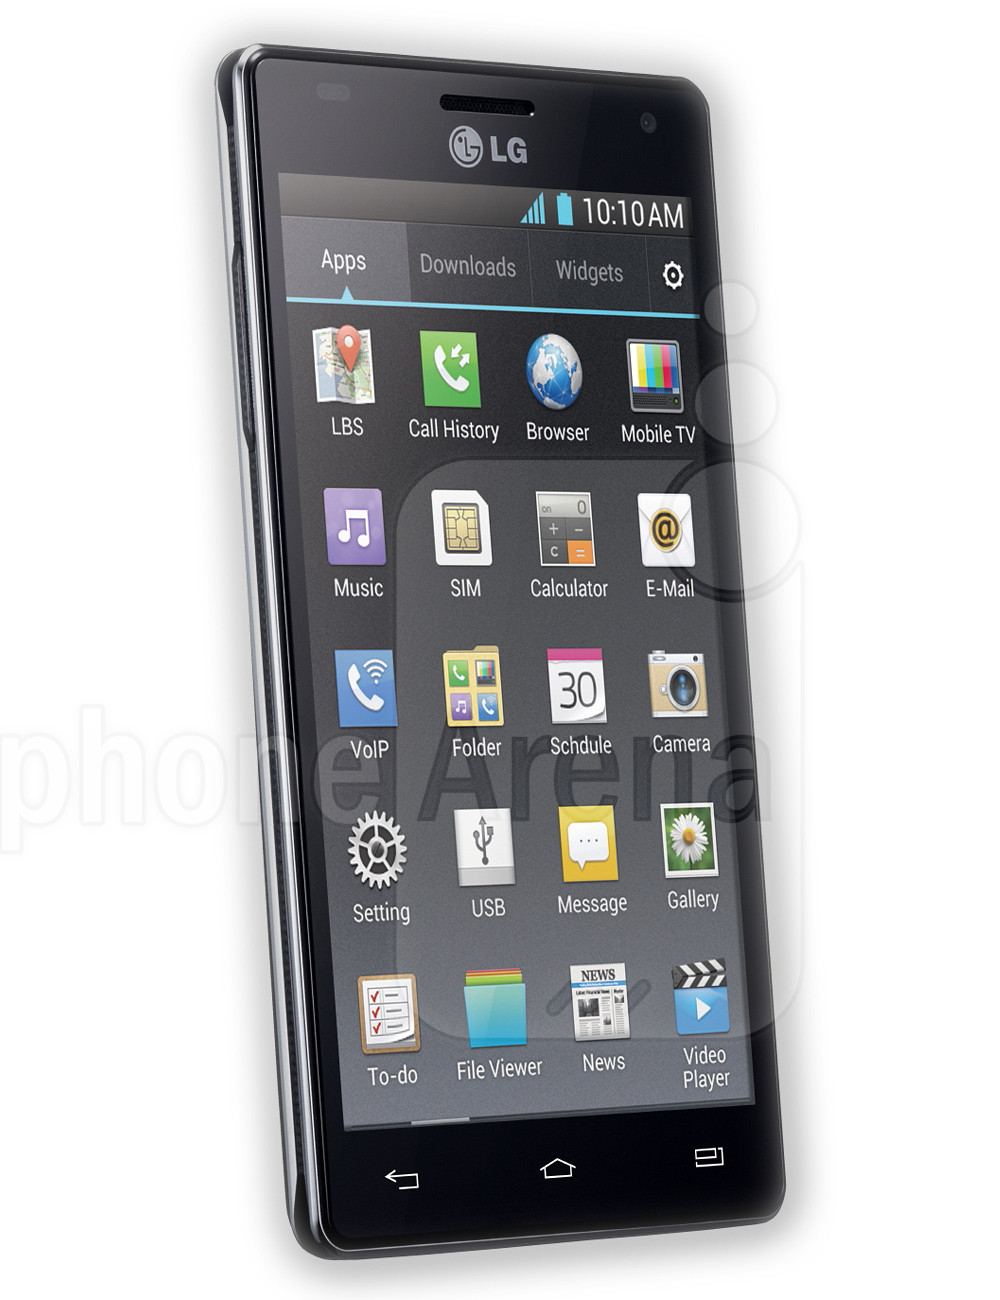 LG Optimus 4X HD specs